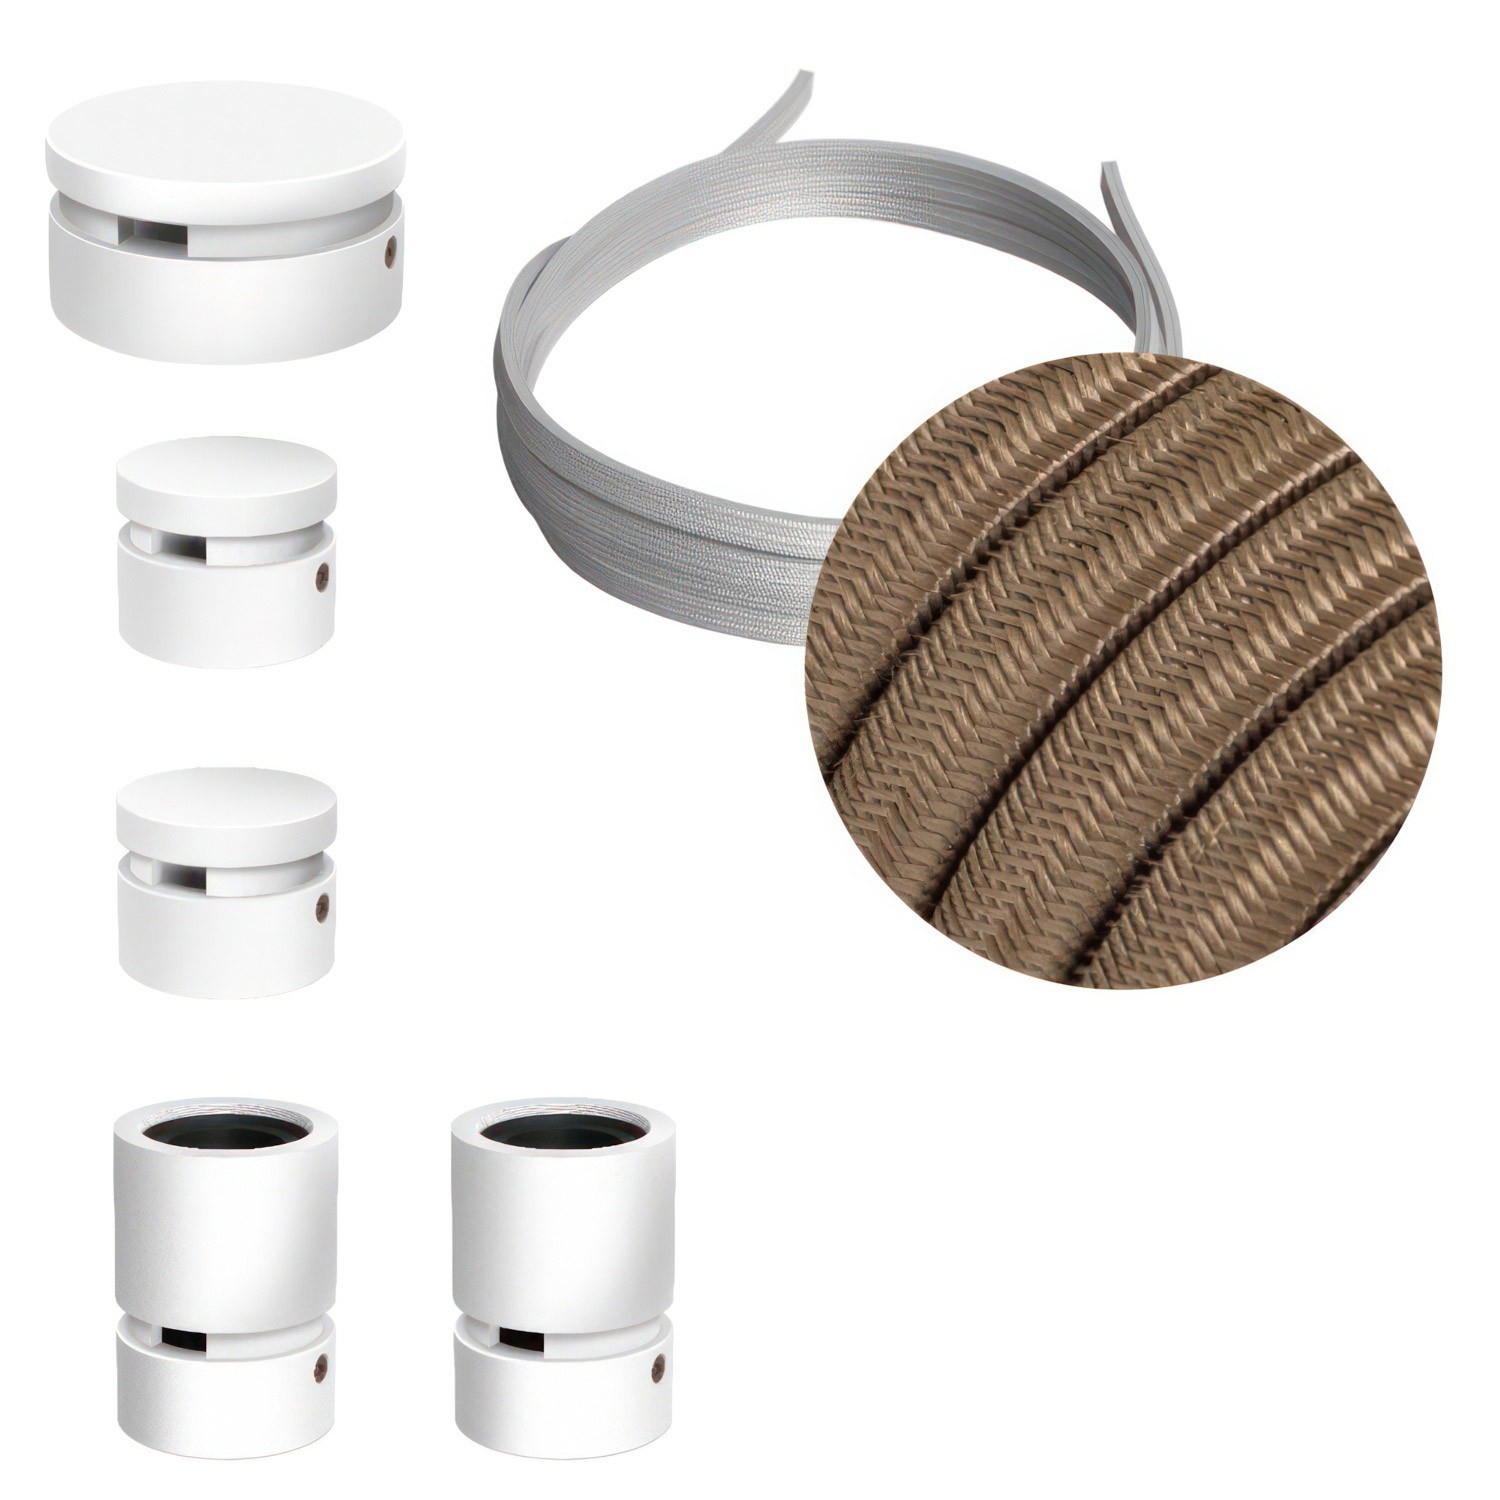 Filé Wiggle kit systeem - met 3 m. prikkabel voor lichtsnoer en 5 componenten van wit gelakt hout voor binnenruimtes.